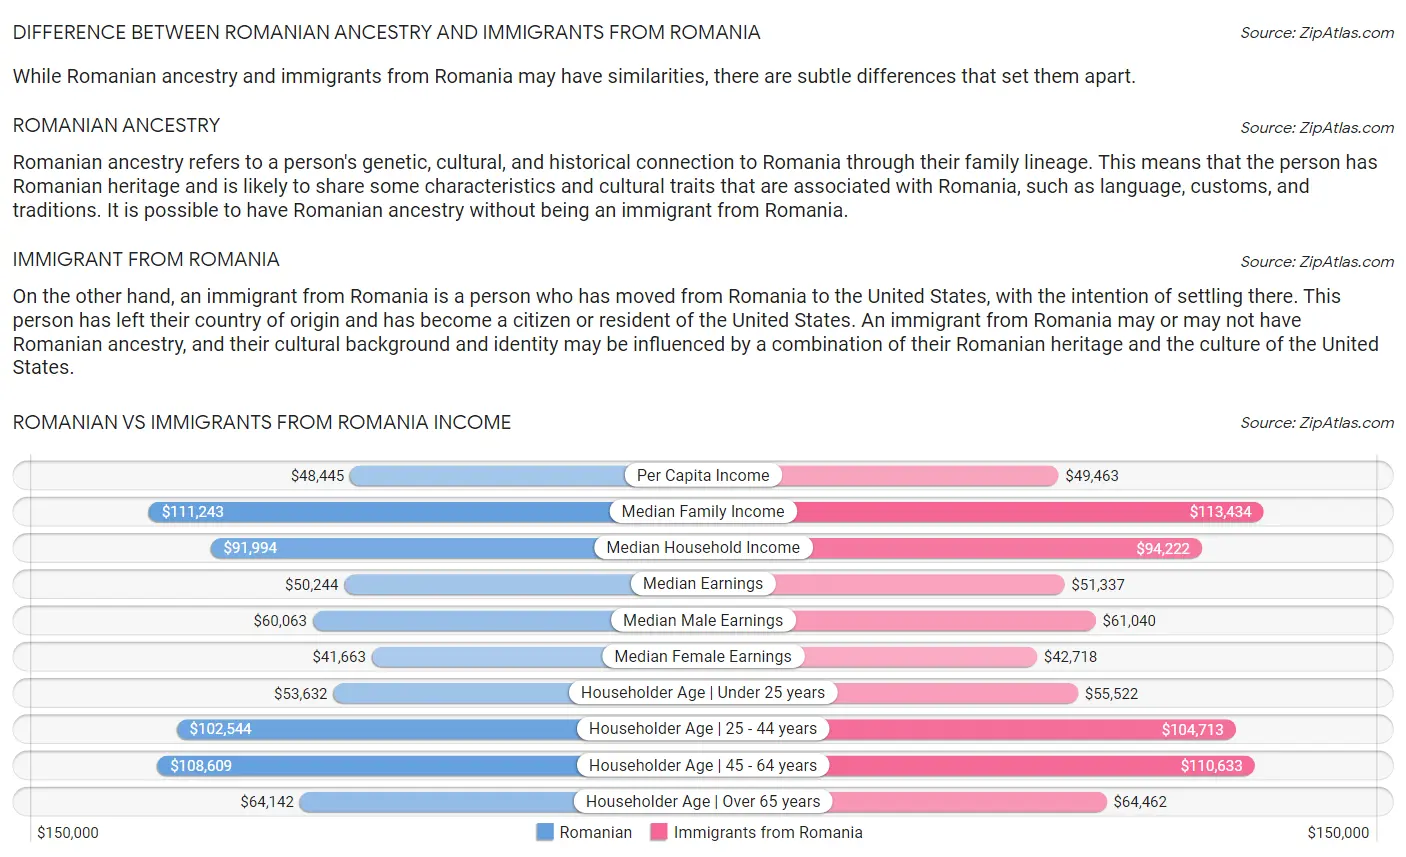 Romanian vs Immigrants from Romania Income